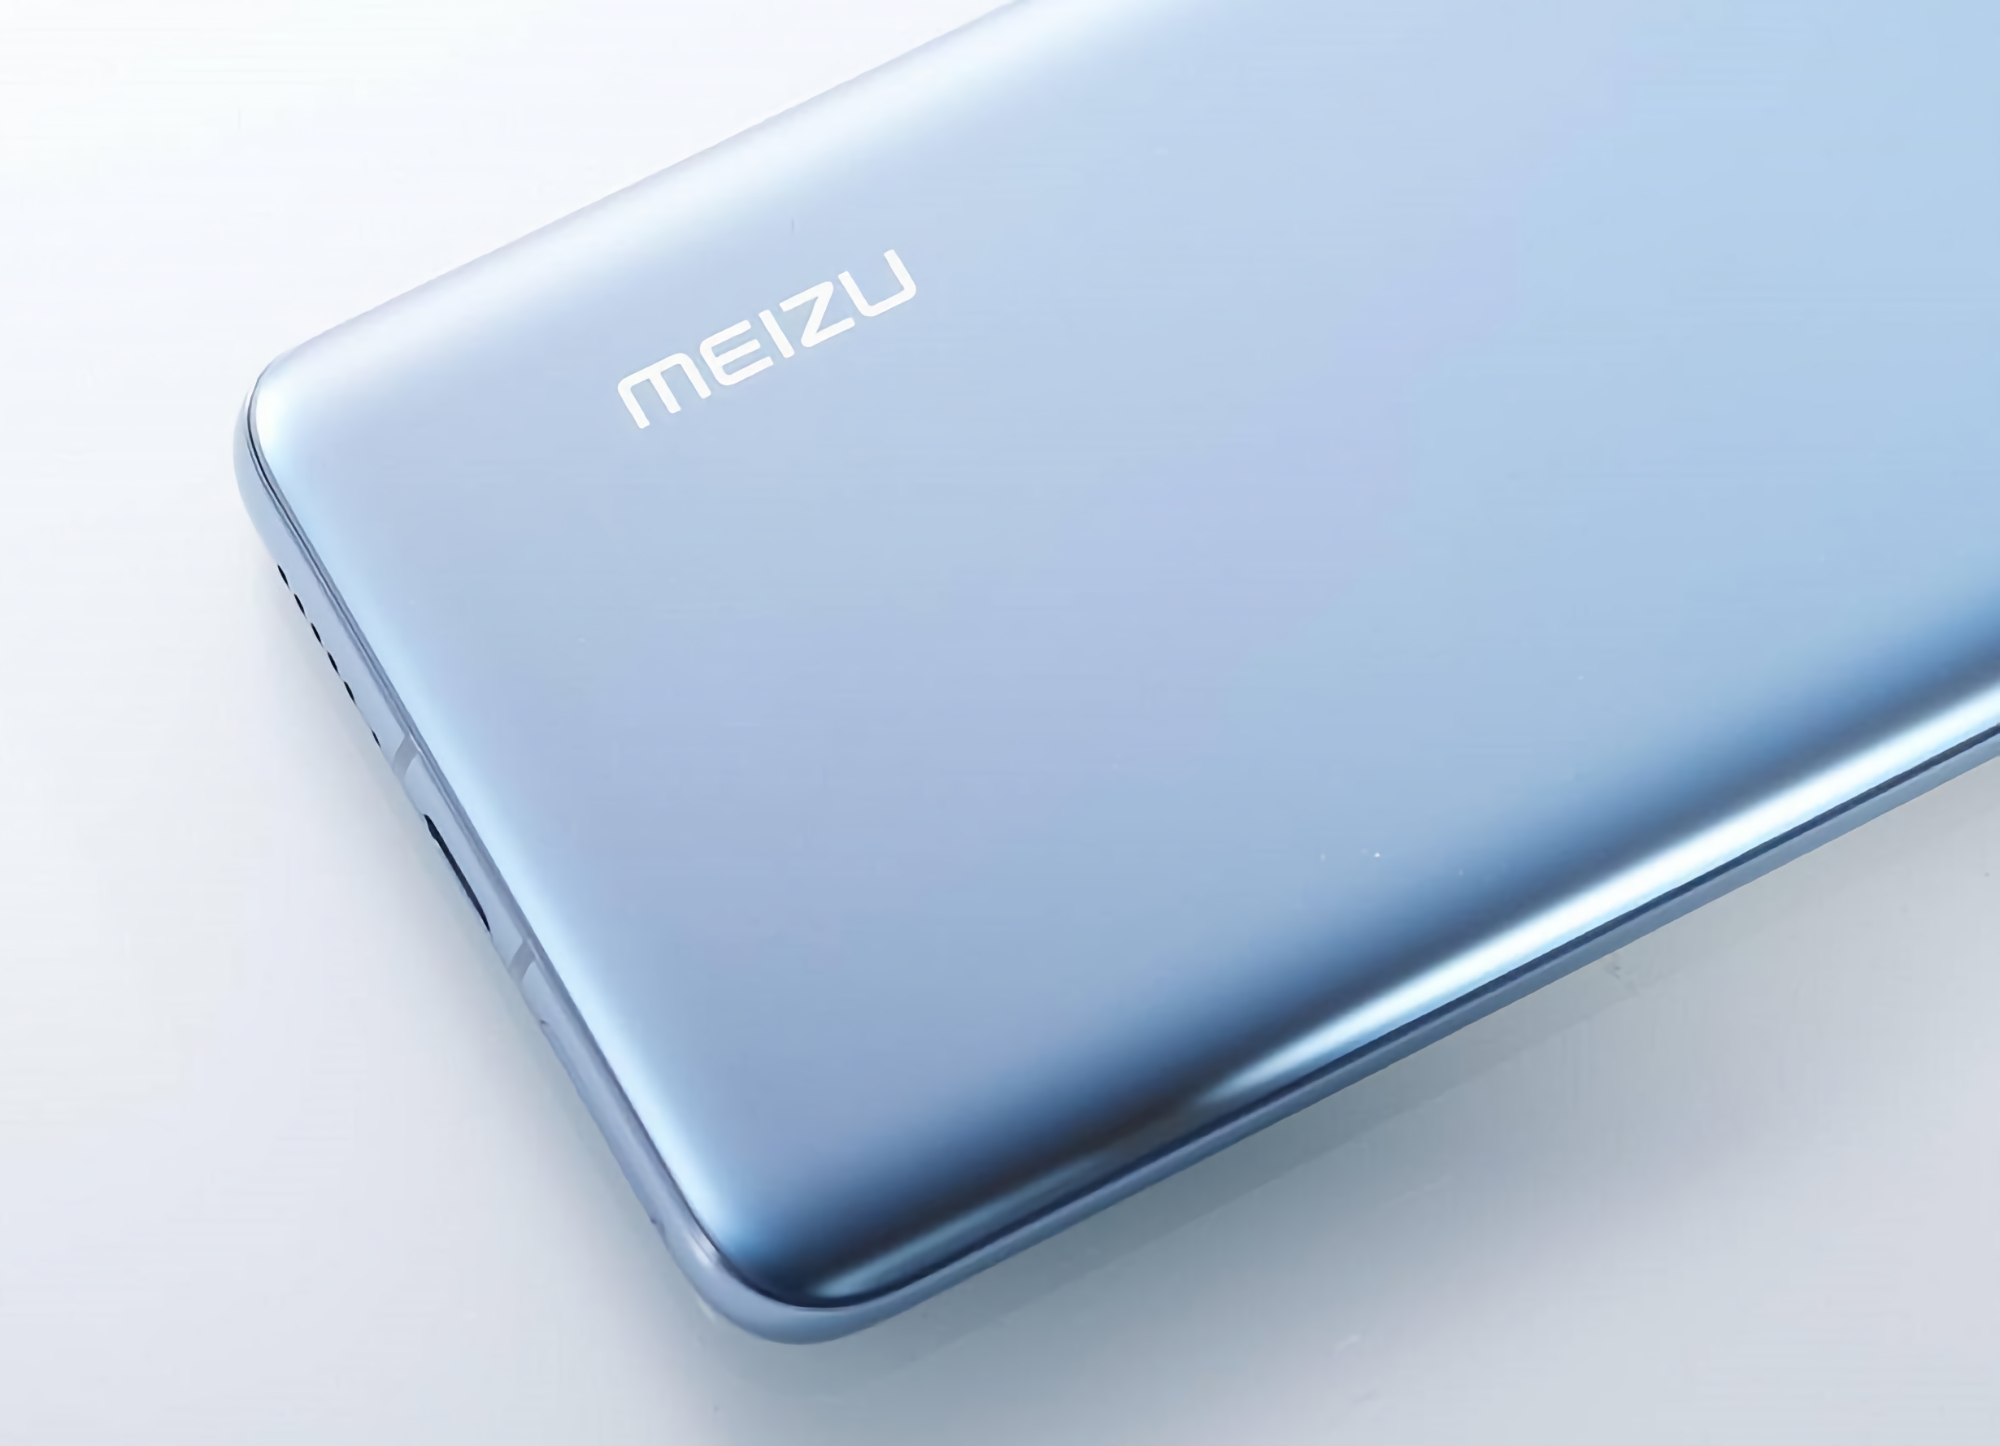 Po trzech latach ciszy: Meizu planuje wprowadzić budżetowy smartfon pod marką Blue Charm